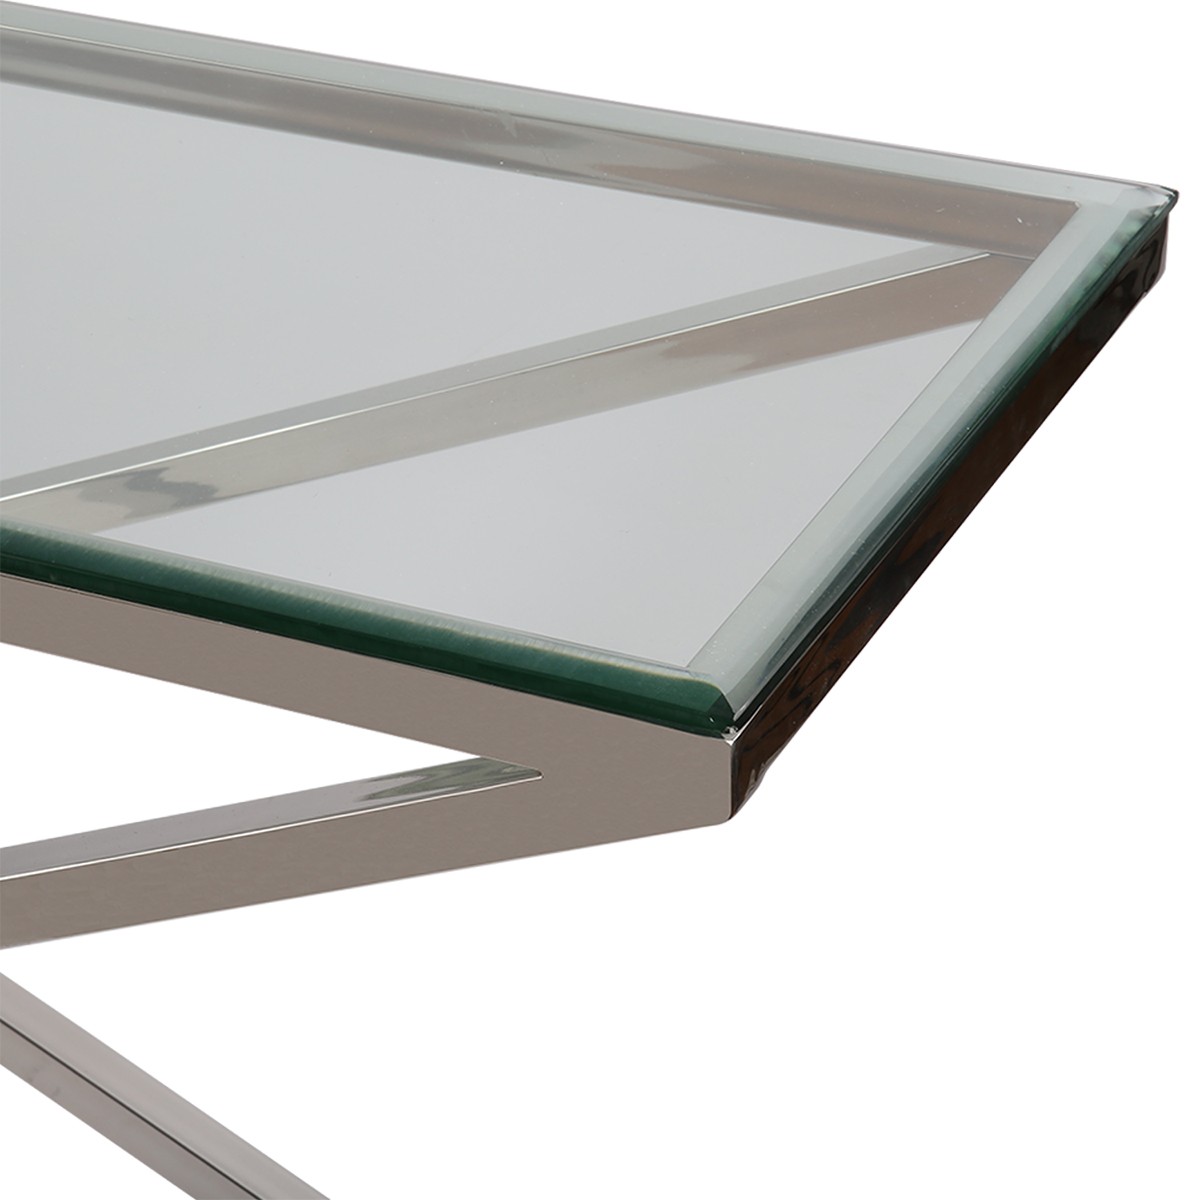 Sideboard Glas-Metall, Wandtiisch verchromt Metall Glasplatte, Breite 160 cm